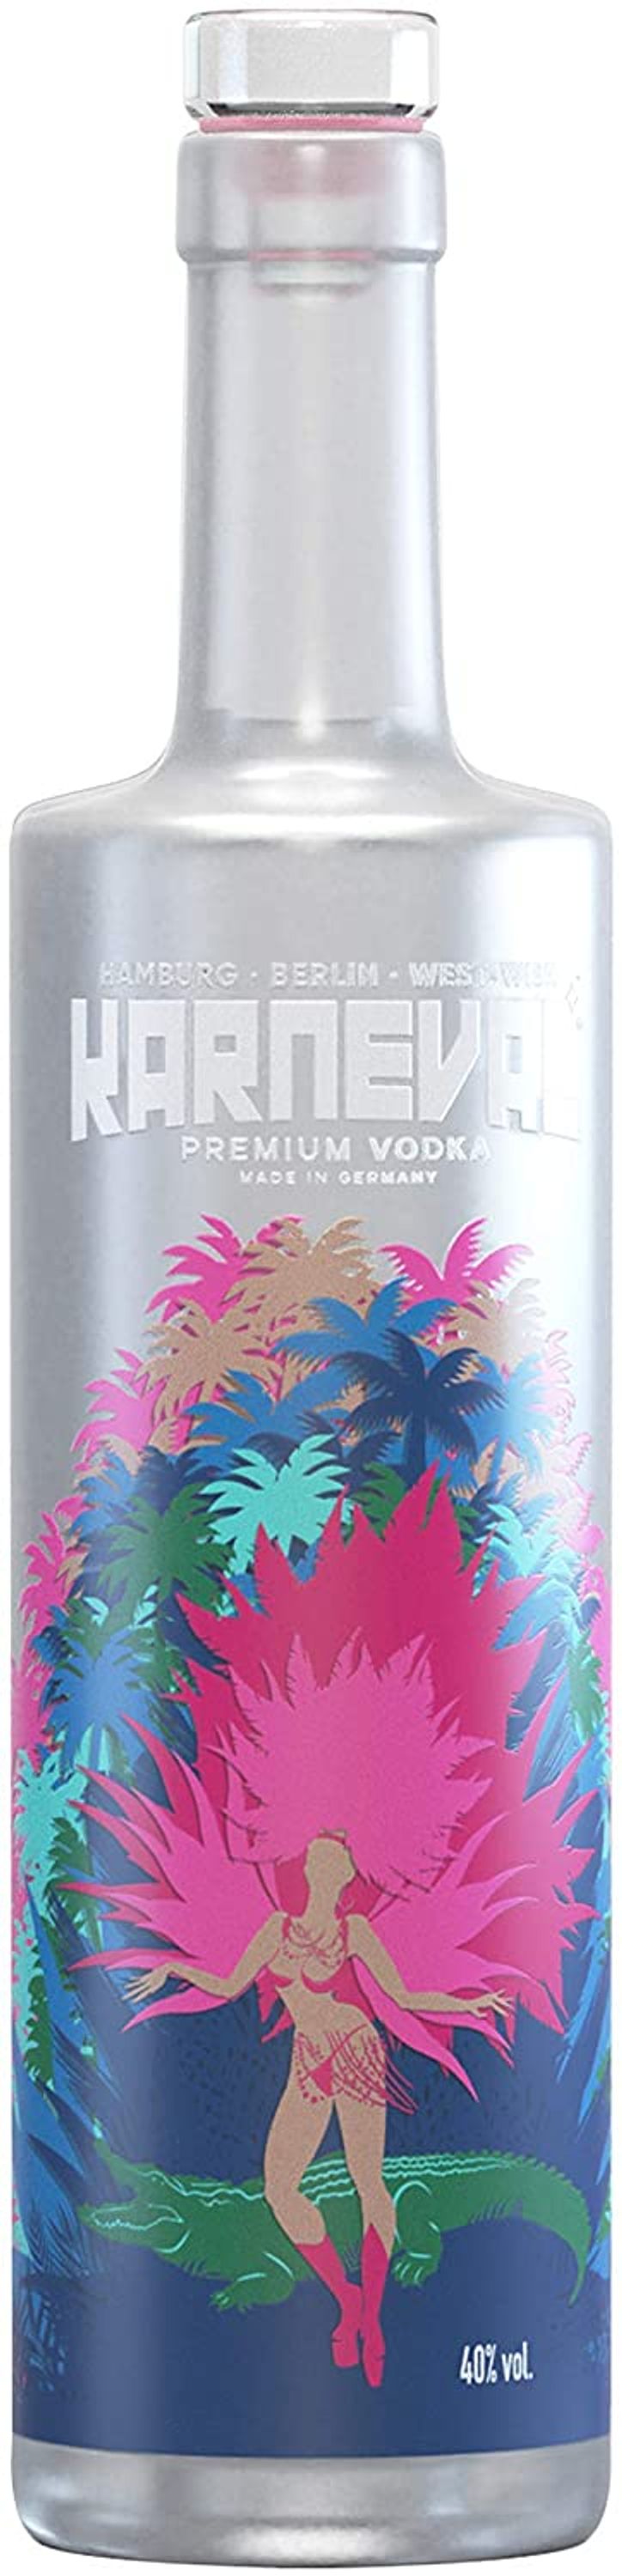 Carnival Vodka 0.5l, alc. 40% by volume, vodka Germany